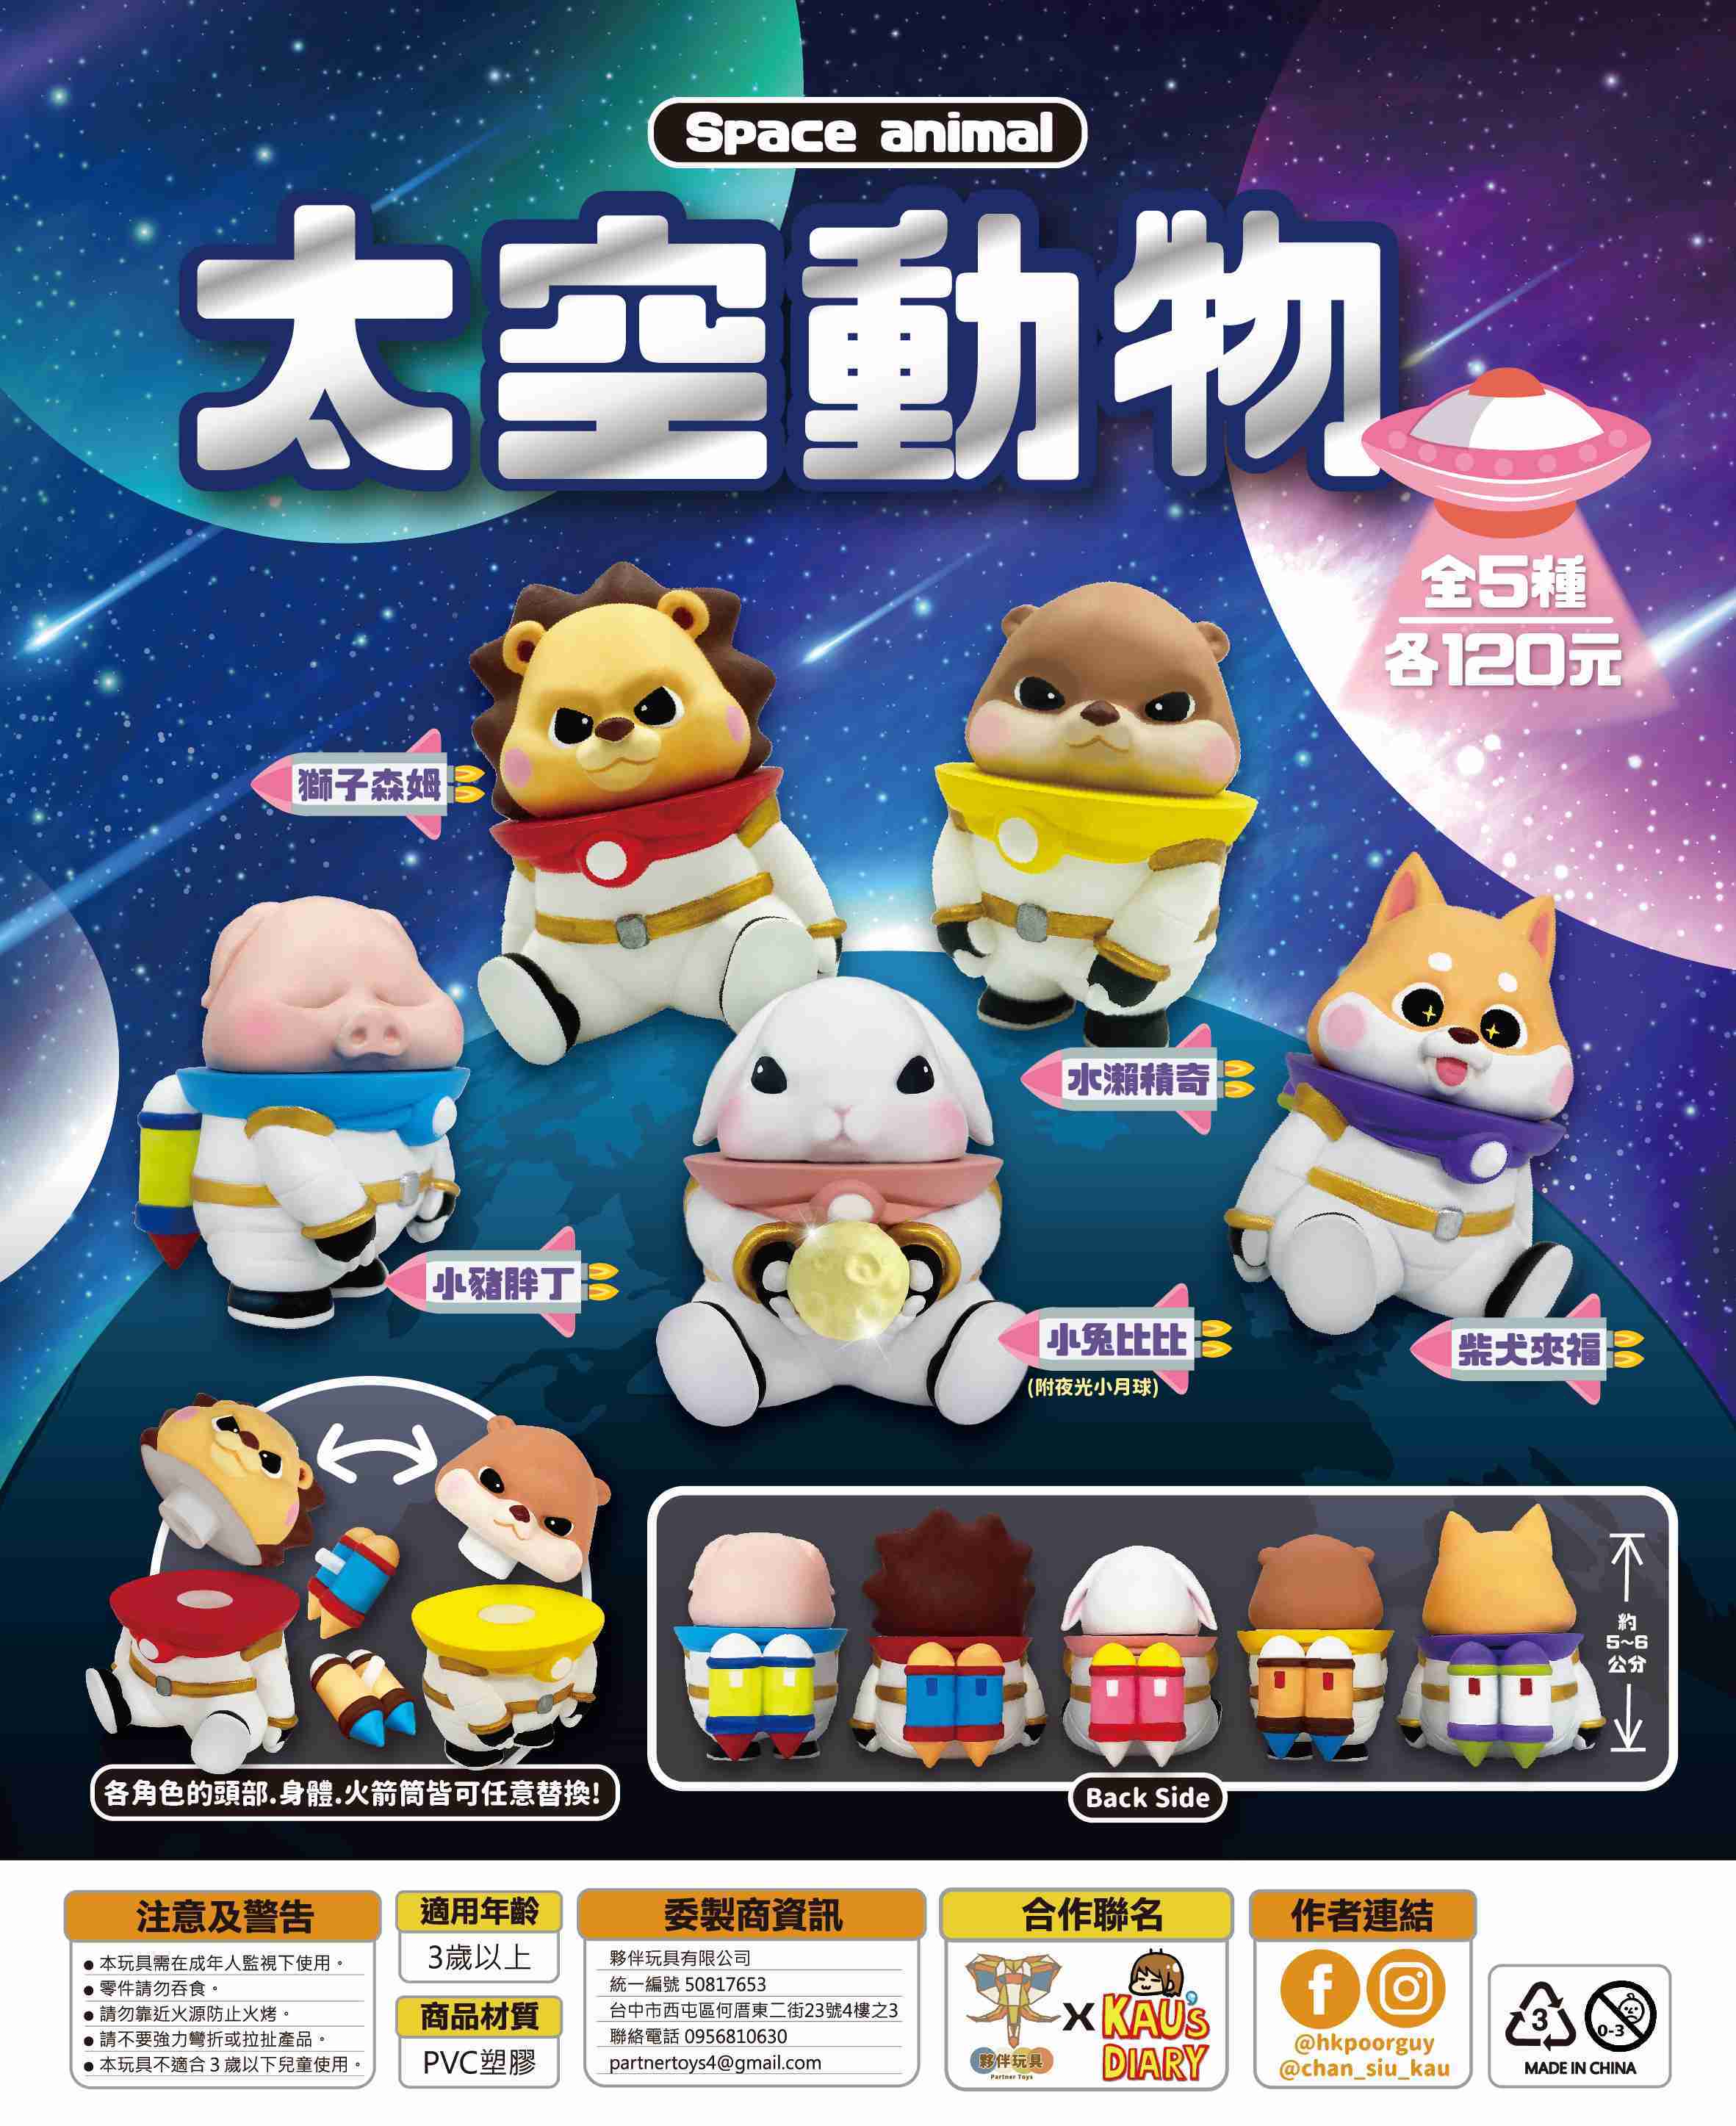 【玩具之森】《現貨》夥伴玩具✕陳小球KAU'S-俗不可耐生活賬 - 太空動物 扭蛋 轉蛋 (一套5款出售)